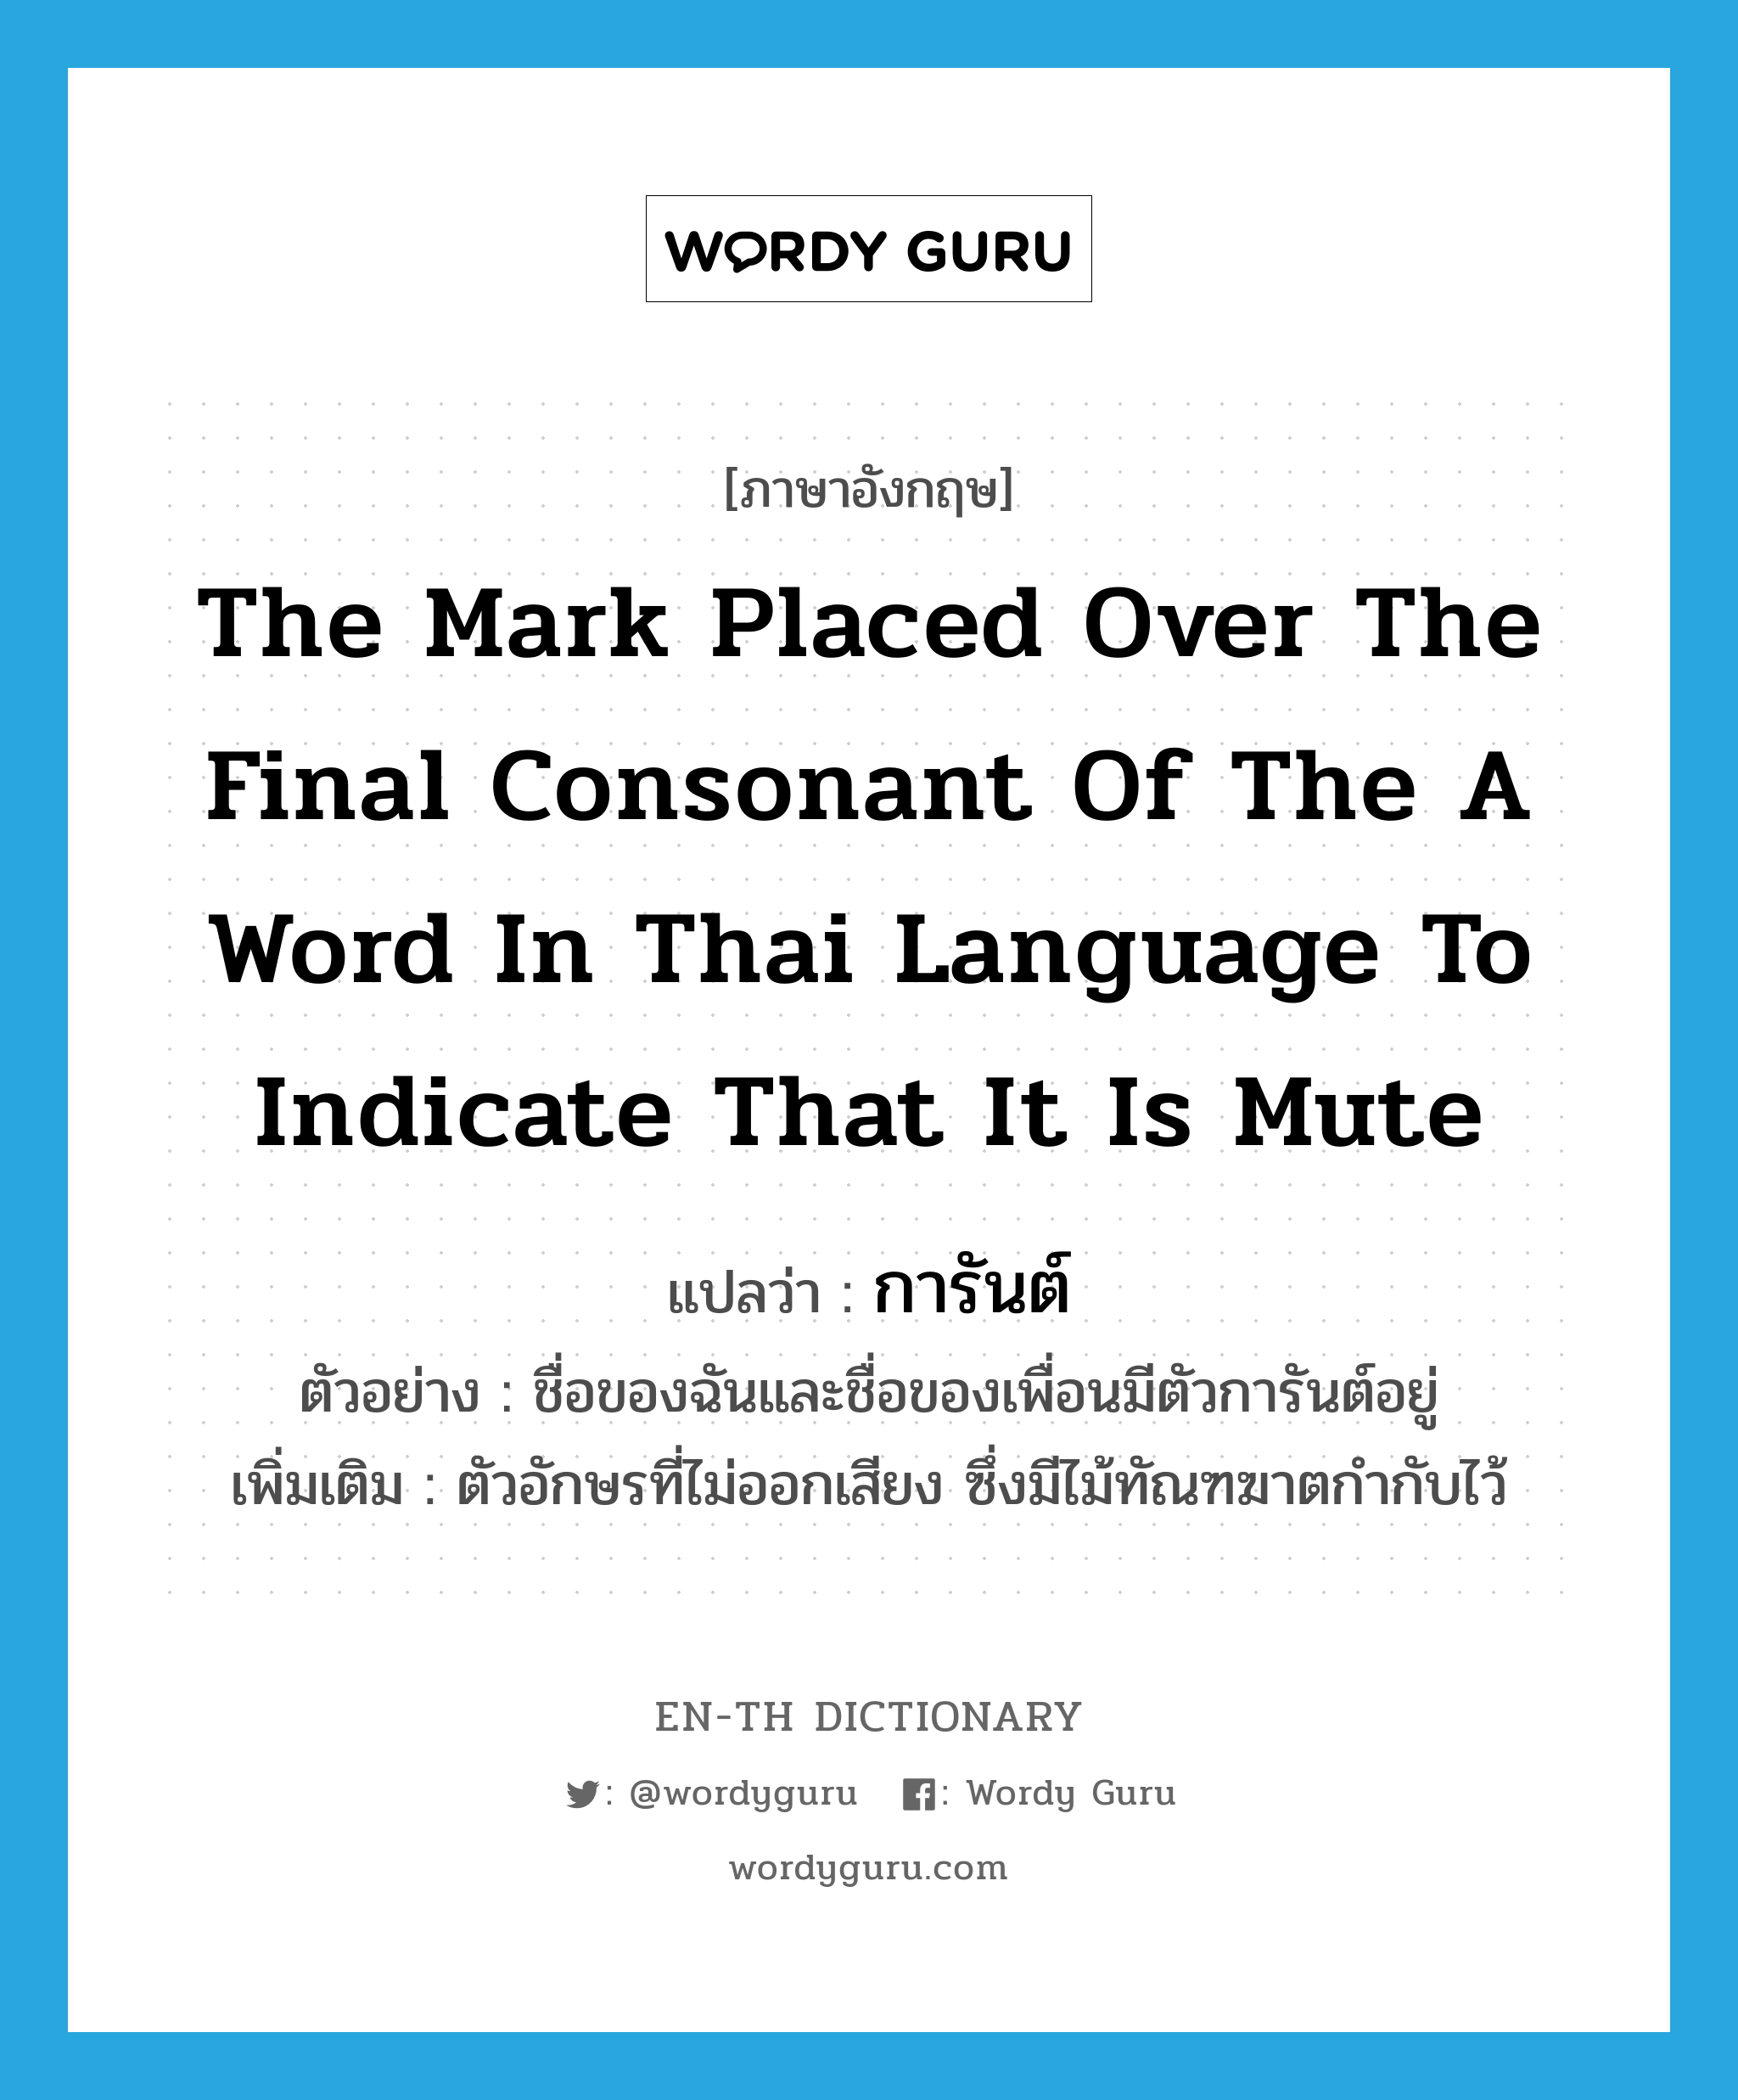 การันต์ ภาษาอังกฤษ?, คำศัพท์ภาษาอังกฤษ การันต์ แปลว่า the mark placed over the final consonant of the a word in Thai language to indicate that it is mute ประเภท N ตัวอย่าง ชื่อของฉันและชื่อของเพื่อนมีตัวการันต์อยู่ เพิ่มเติม ตัวอักษรที่ไม่ออกเสียง ซึ่งมีไม้ทัณฑฆาตกำกับไว้ หมวด N